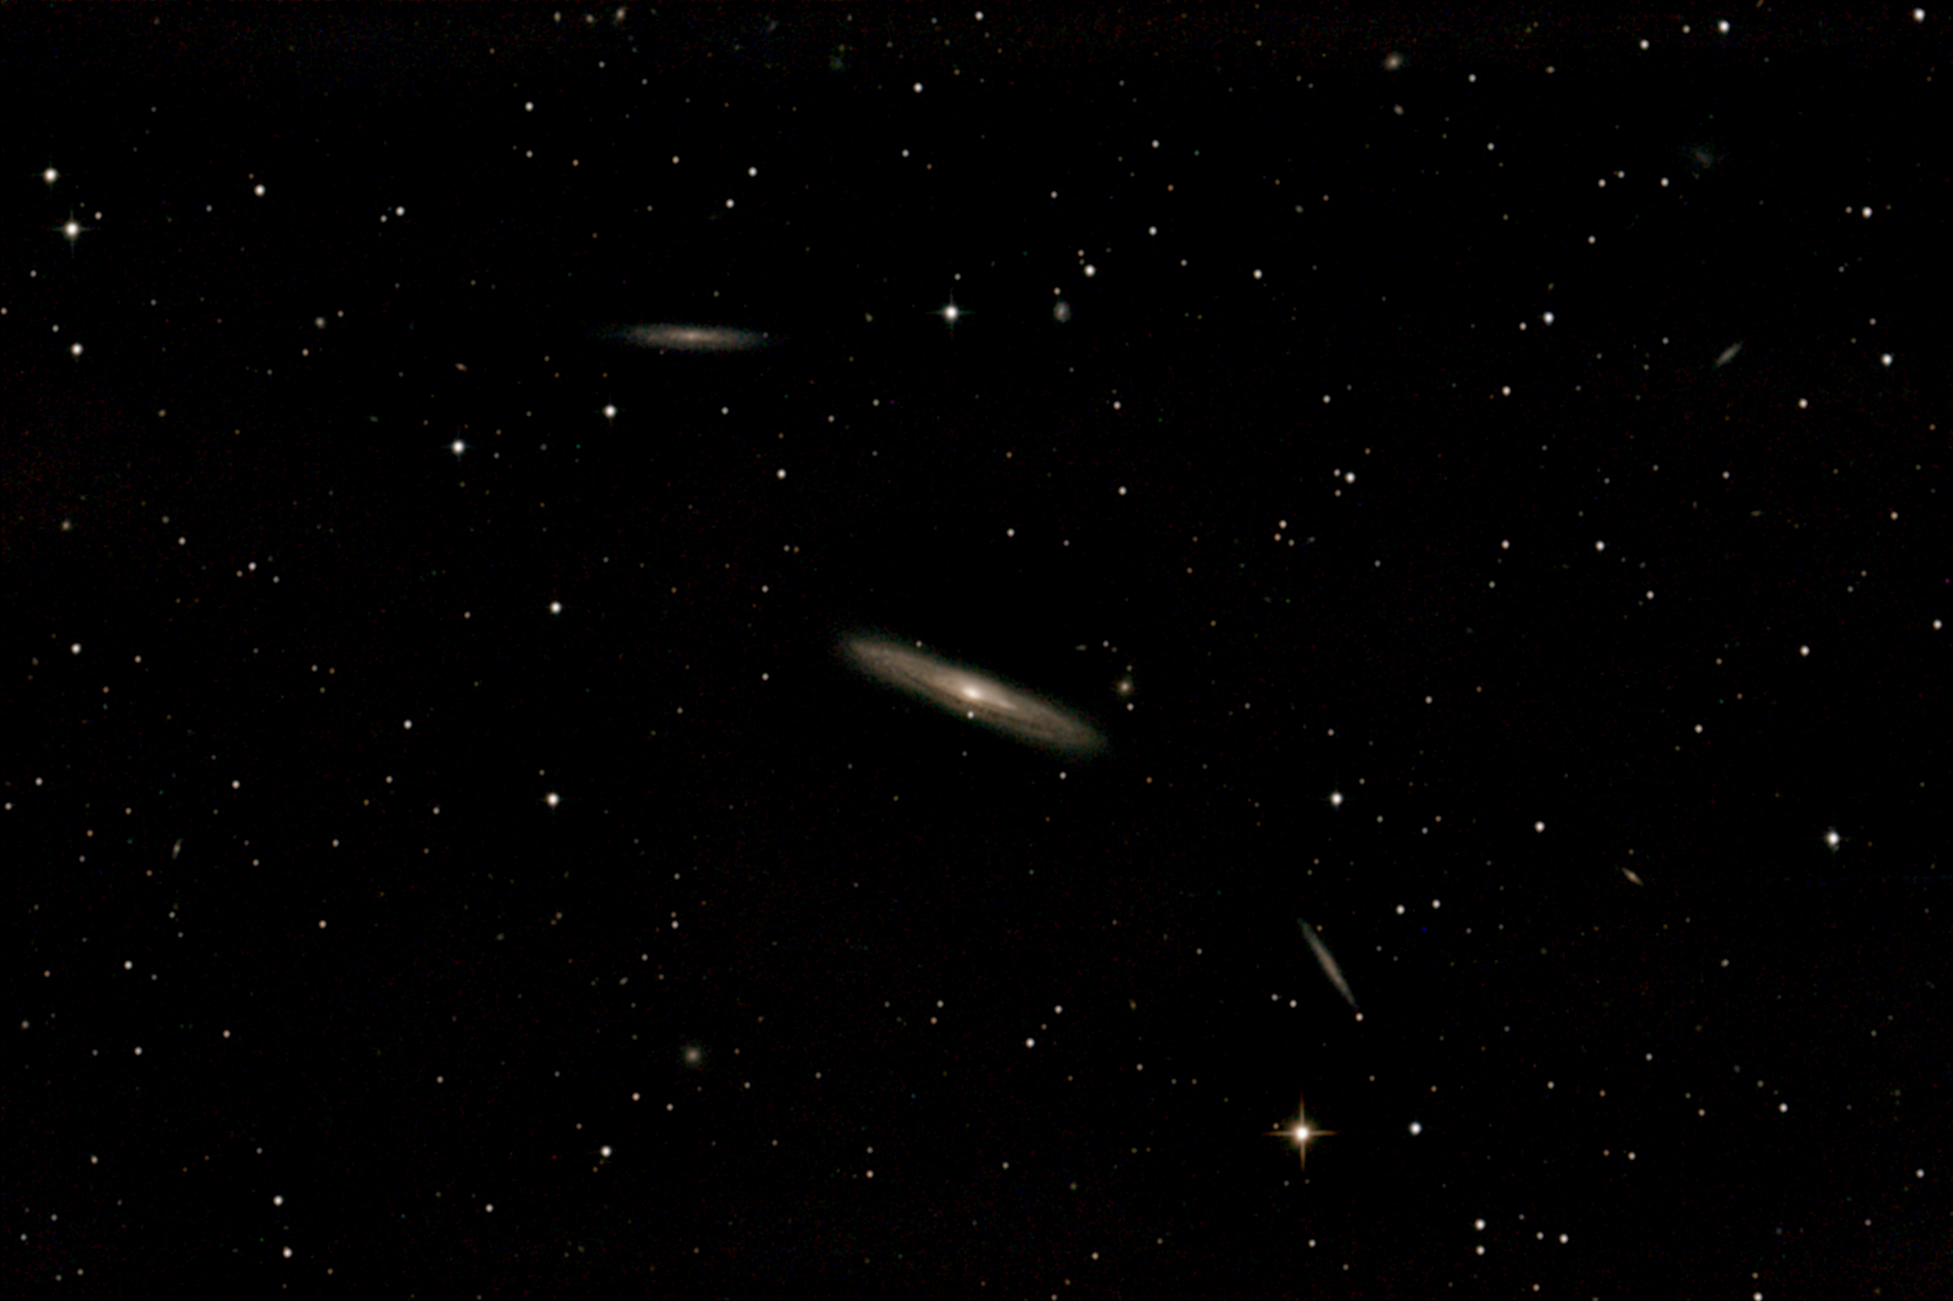 NGC4216 + Begleitgalaxien NGC 4216, NGC 4222, NGC 4206